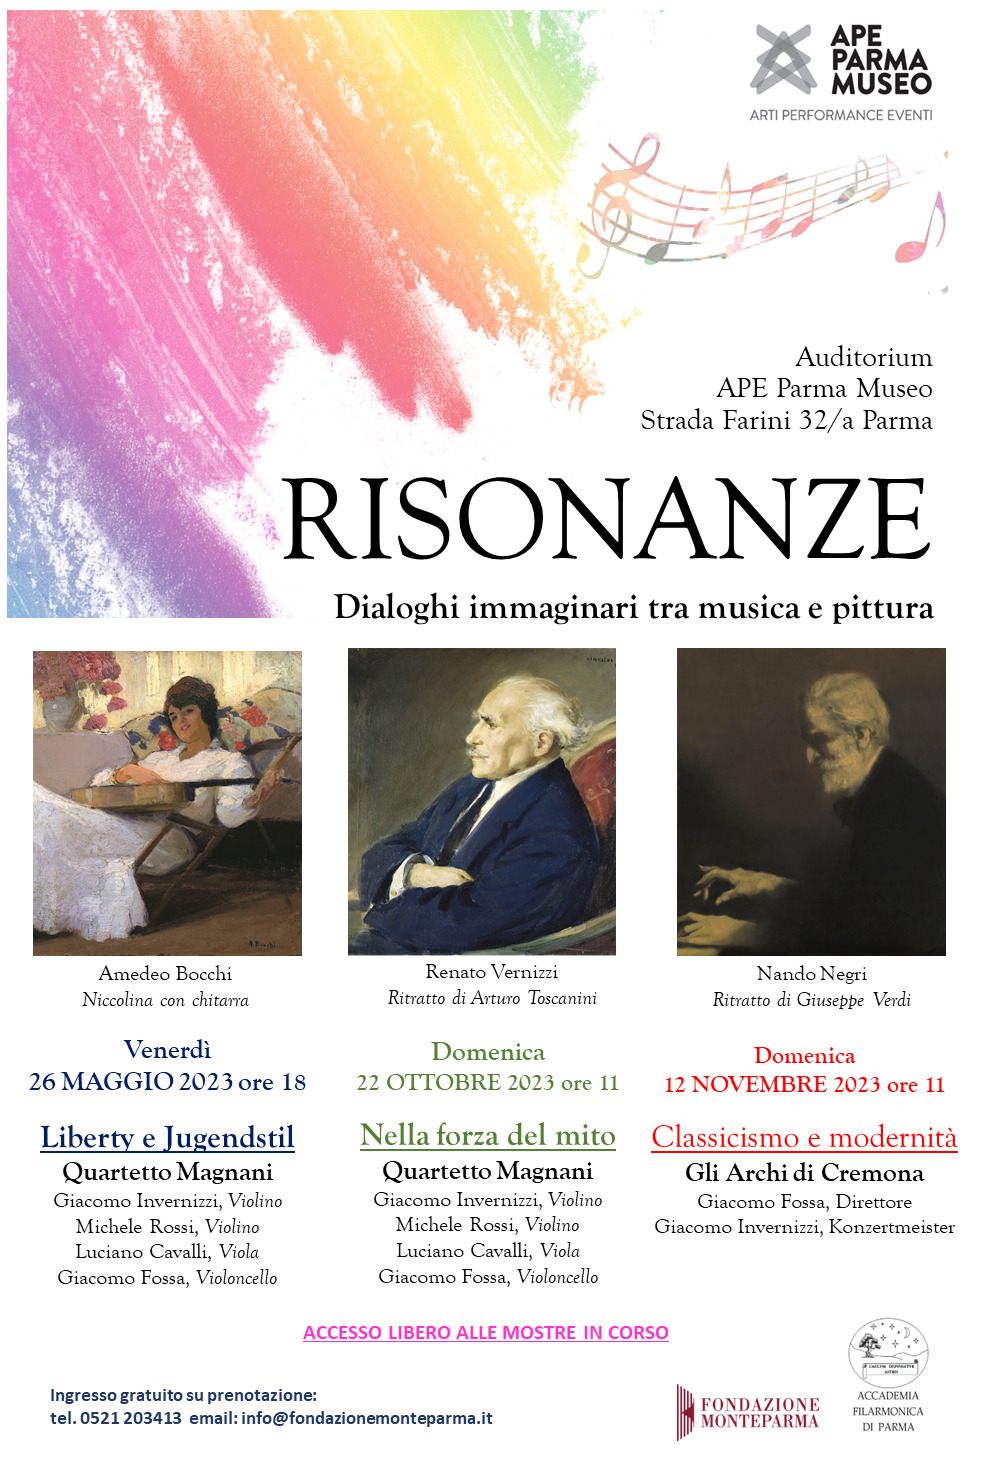 RISONANZE: Dialoghi immaginari tra musica e pittura all'APE Parma Museo